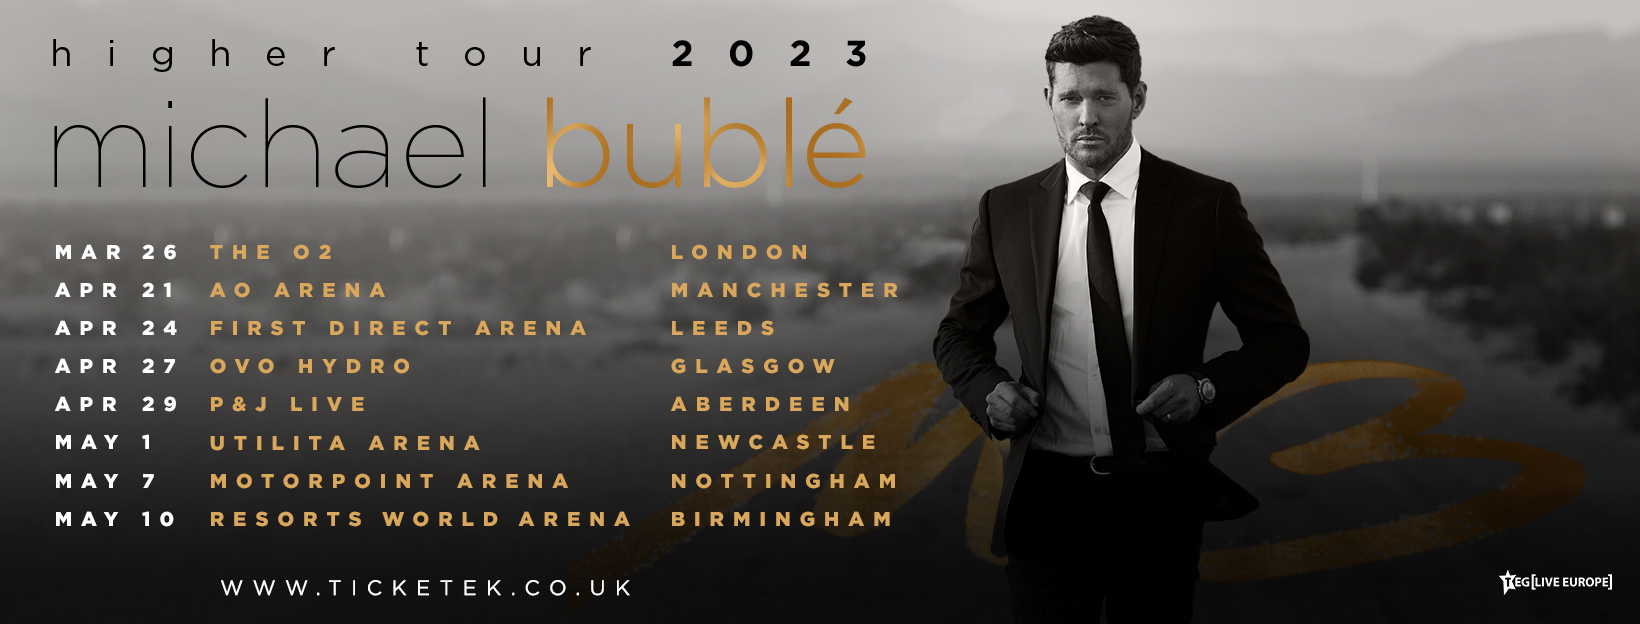 michael buble 2023 tour setlist